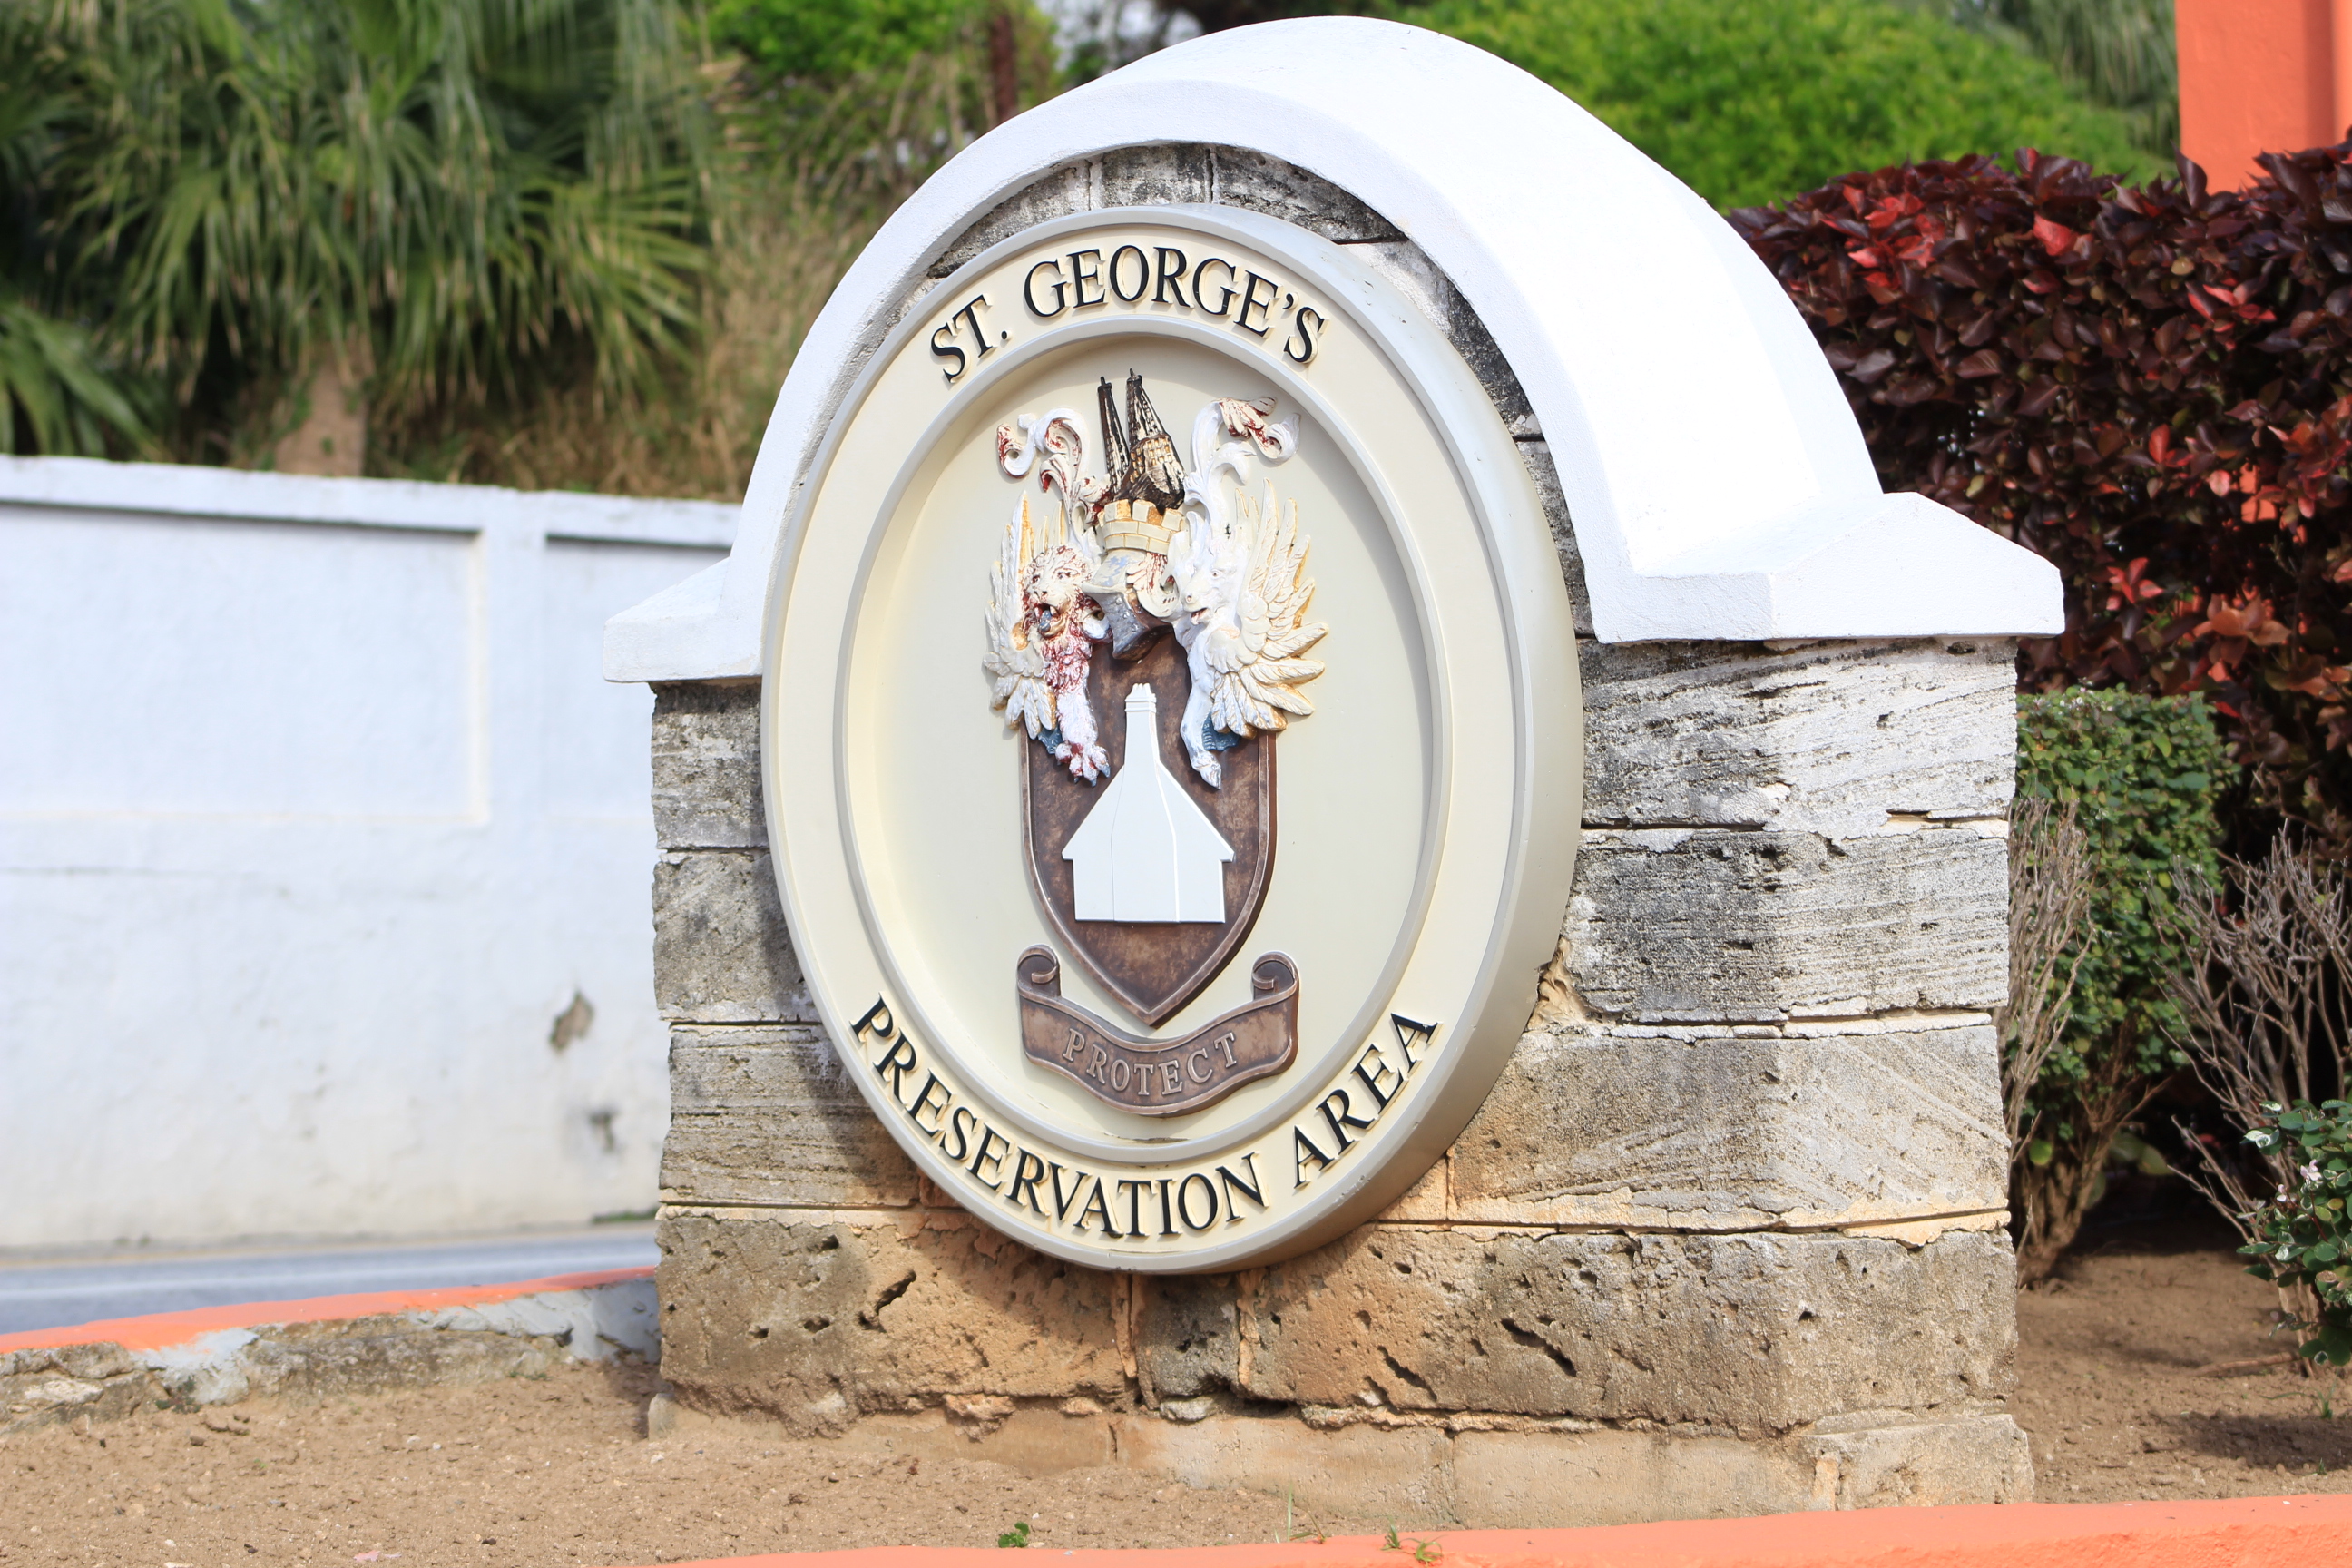 St. Georges Bermuda Visit Bermuda